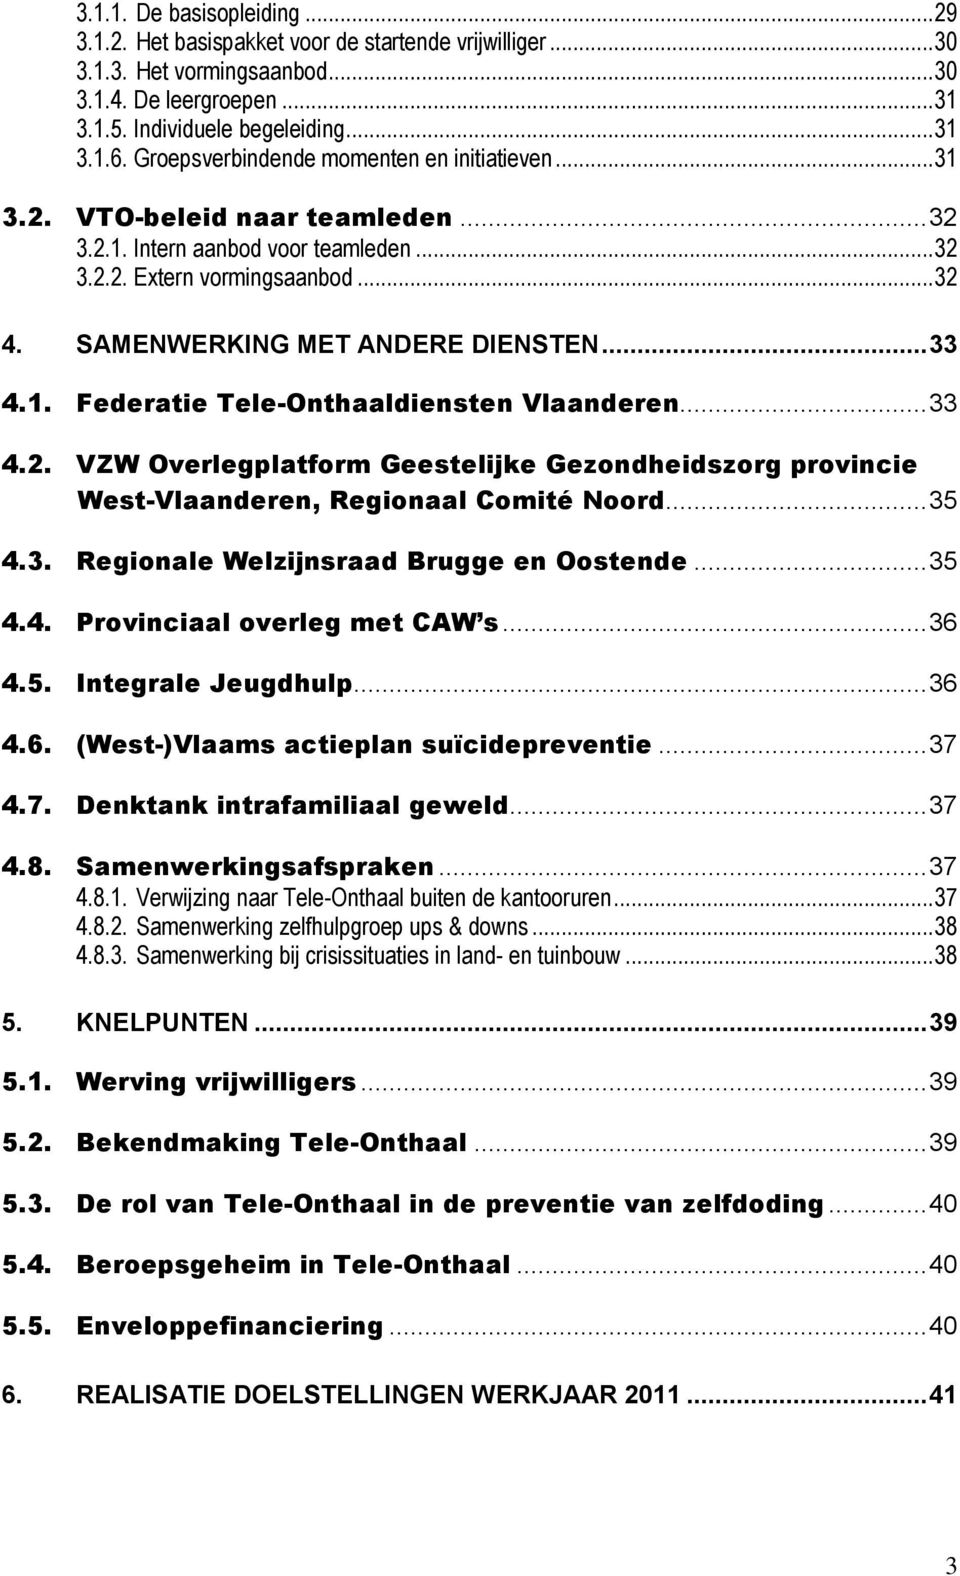 .. 33 4.1. Federatie Tele-Onthaaldiensten Vlaanderen... 33 4.2. VZW Overlegplatform Geestelijke Gezondheidszorg provincie West-Vlaanderen, Regionaal Comité Noord... 35 4.3. Regionale Welzijnsraad Brugge en Oostende.